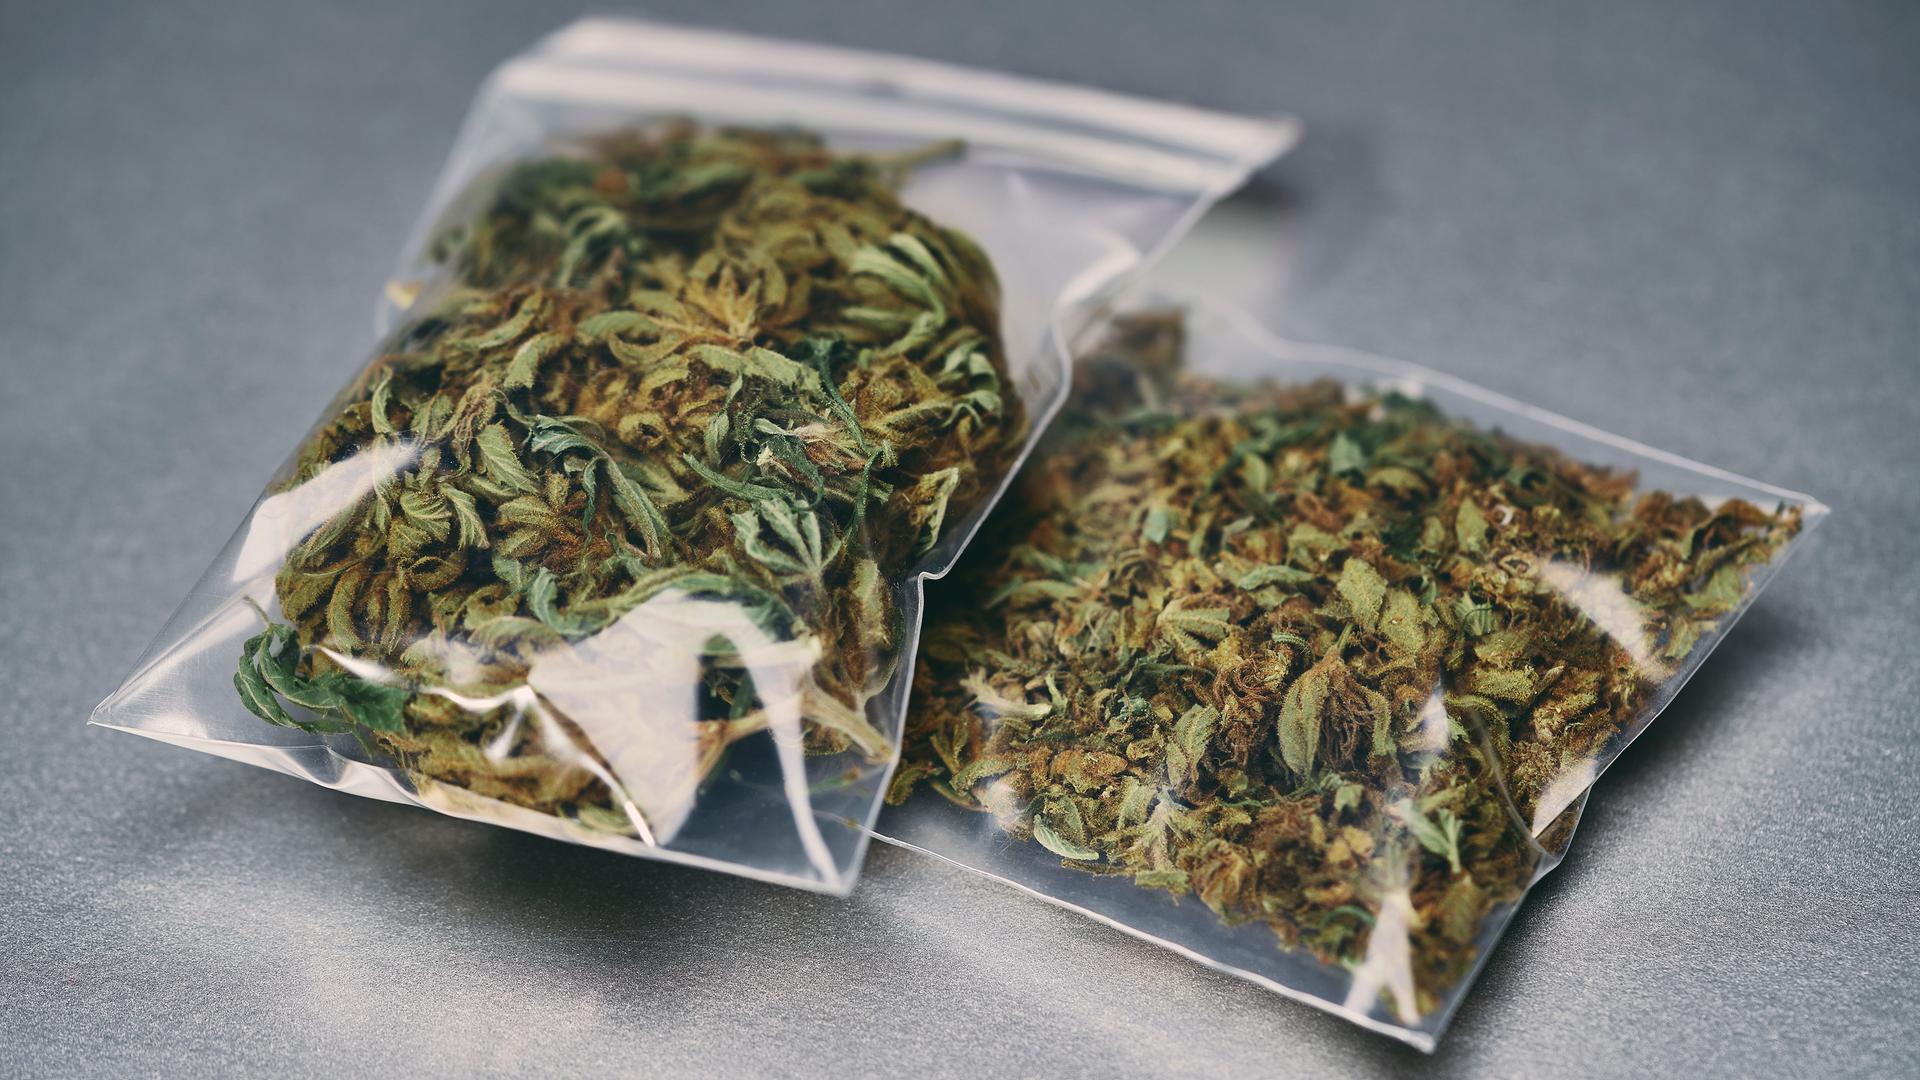 2 kleine Plastik-Tütchen liegen auf einem Tisch. In den Tütchen ist eine getrocknete Pflanze: Cannabis.